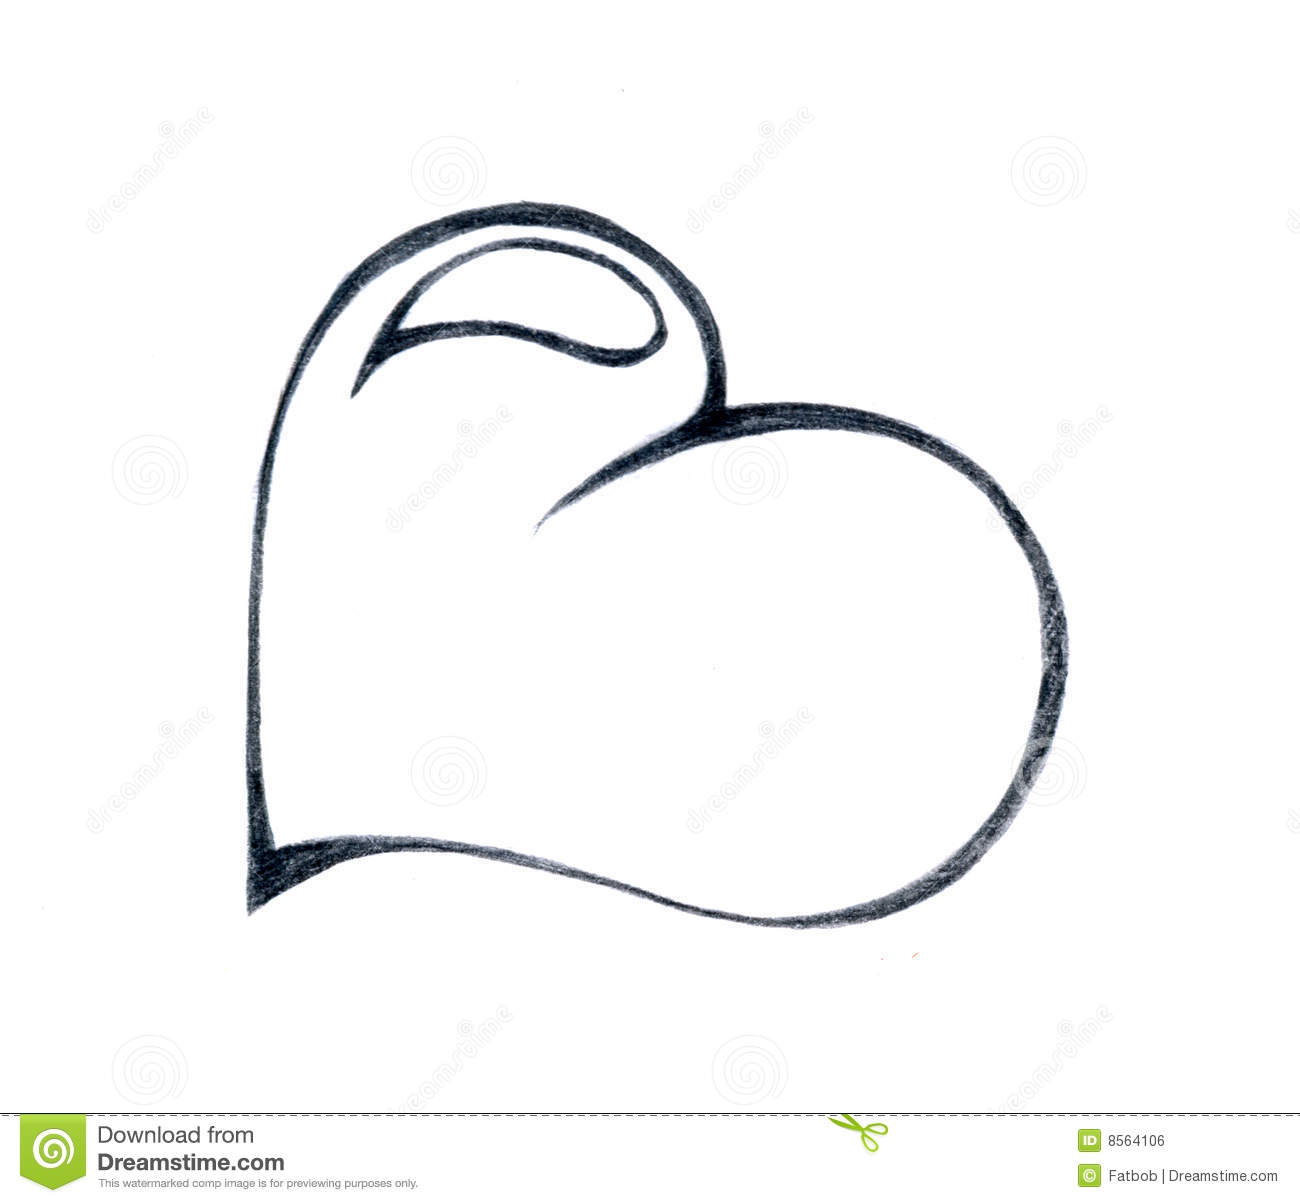 Рисунок сердечка для срисовки на ткань